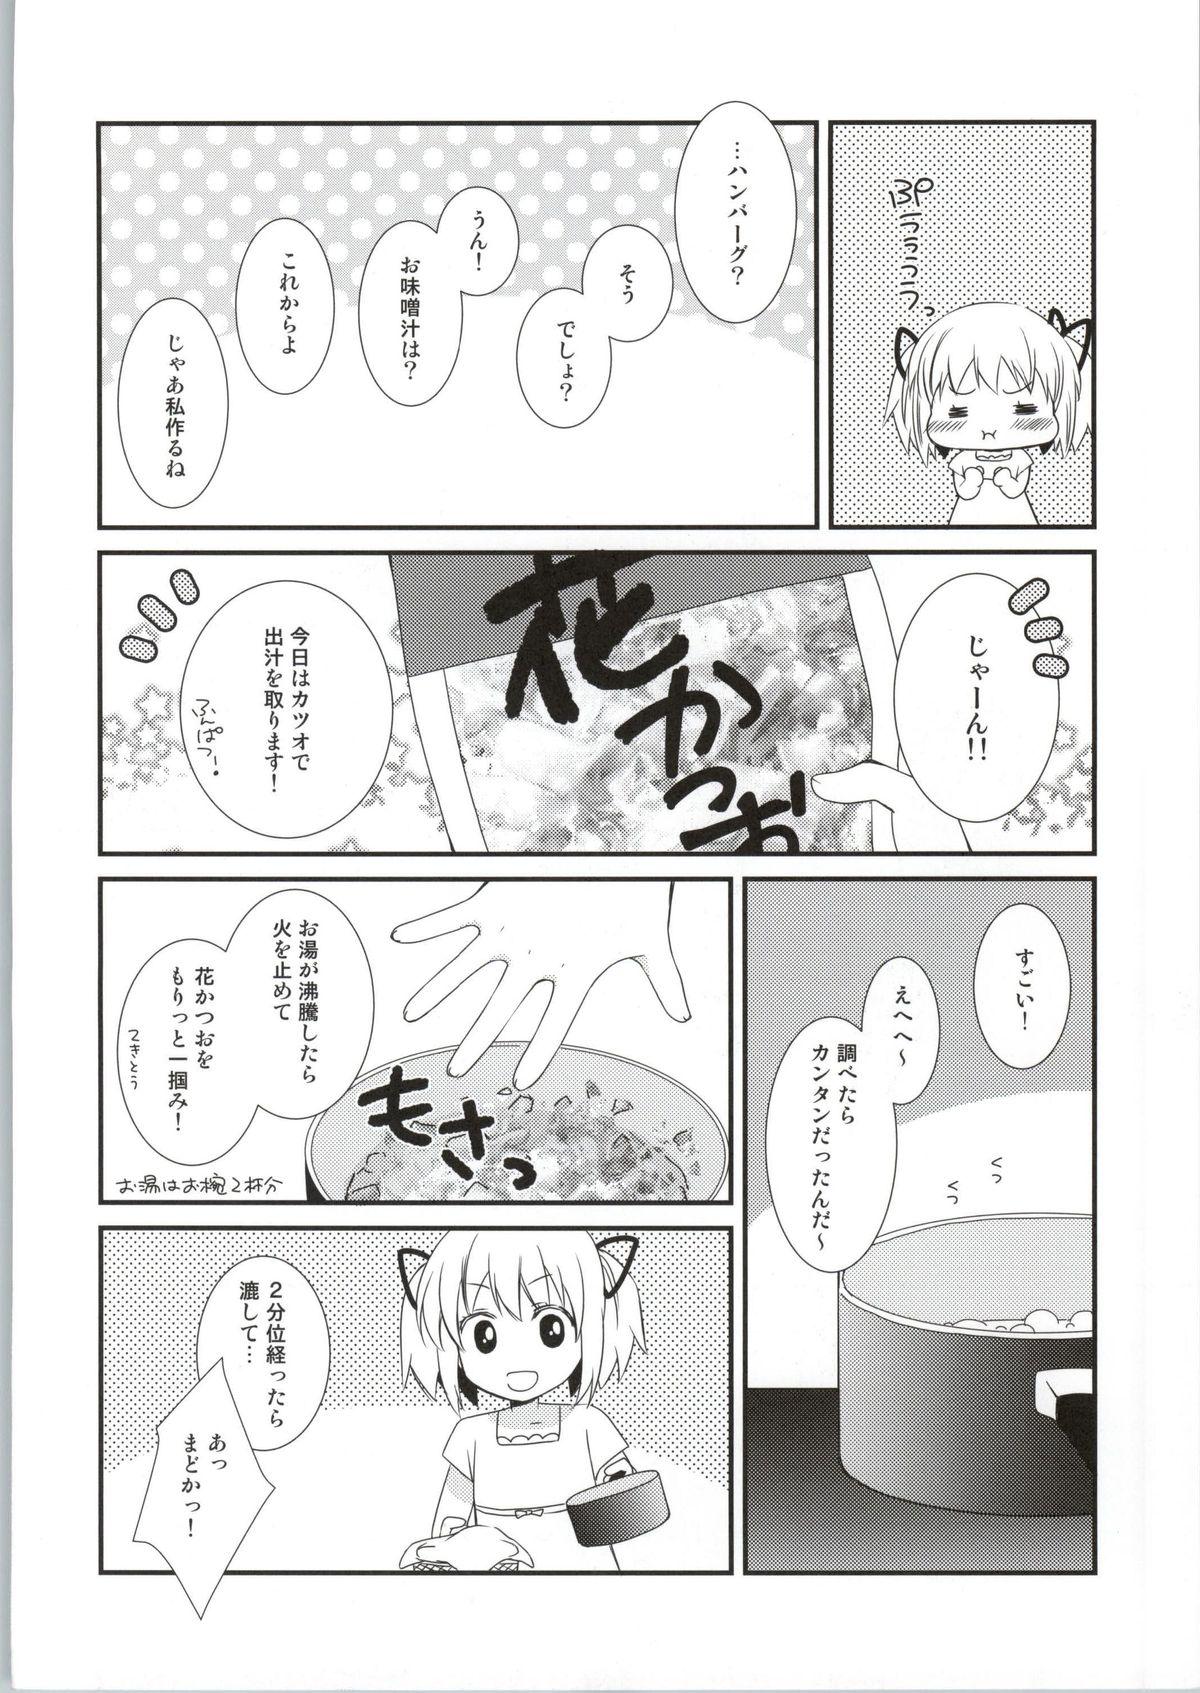 Made Sengyou Shufu no Sentou Fuku wa - Puella magi madoka magica Ex Girlfriend - Page 11